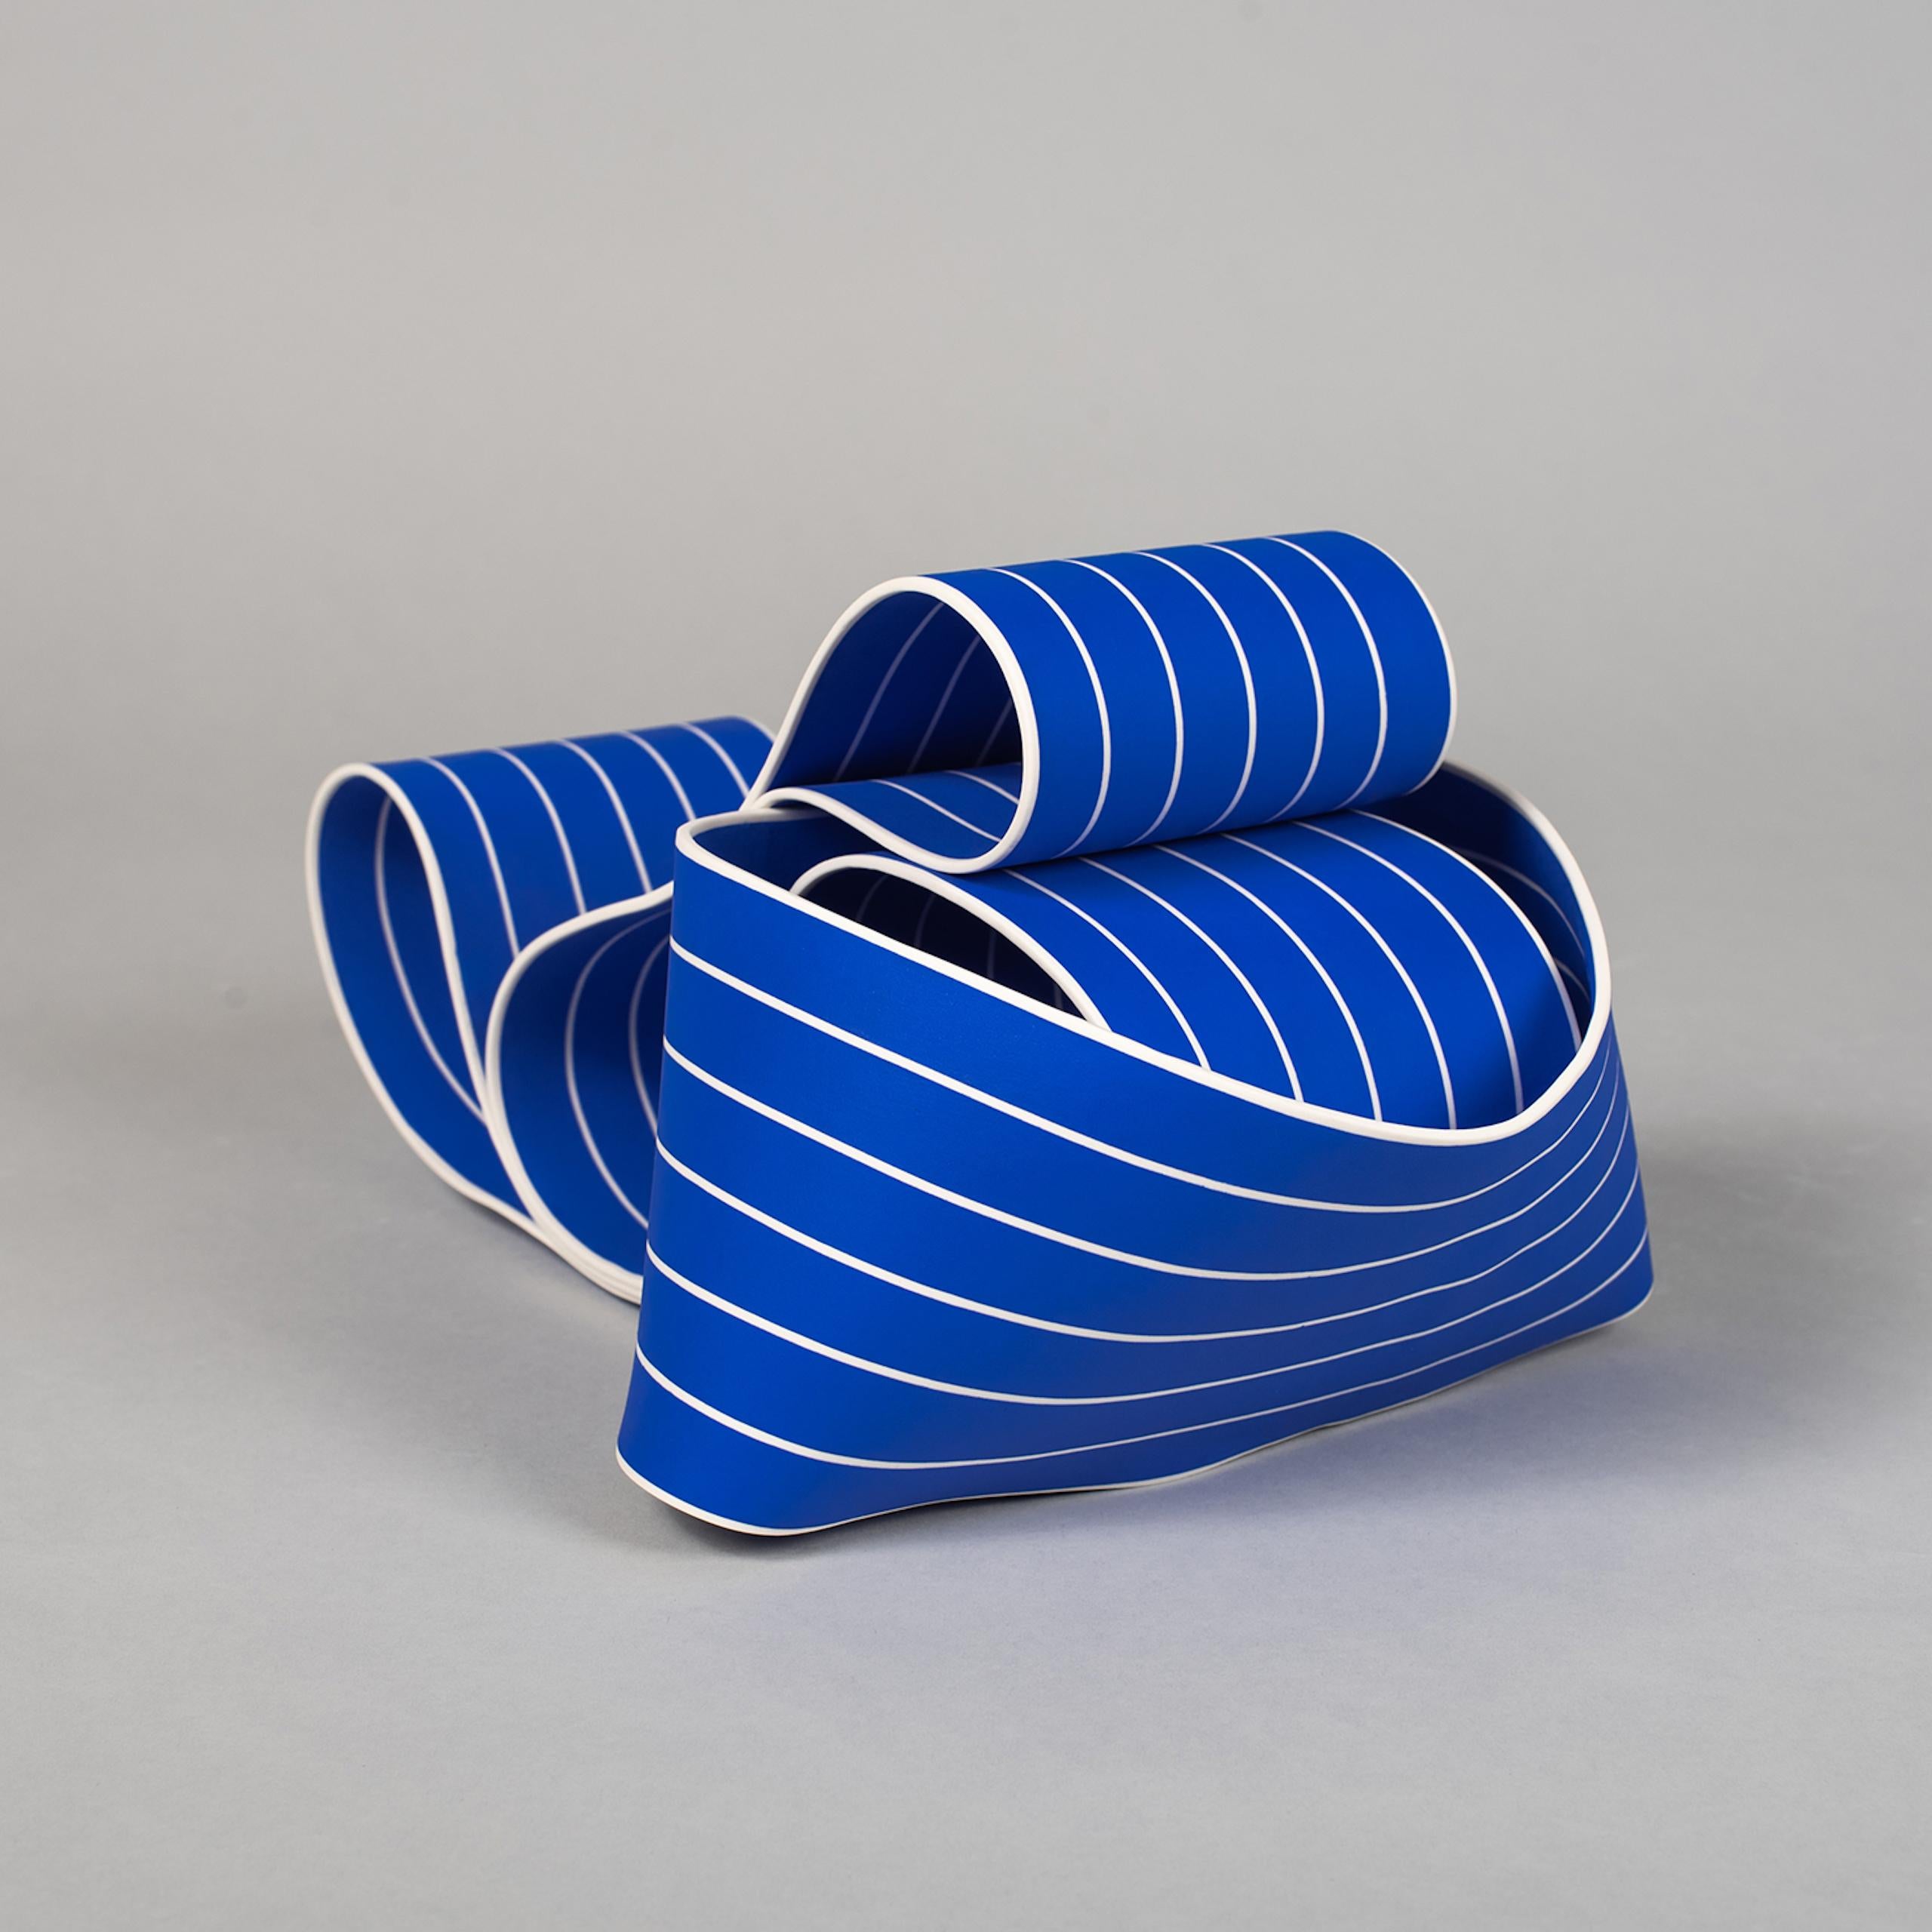 Entrapped 1 by Simcha Even-Chen - Porcelain sculpture, blue lines, movement For Sale 4